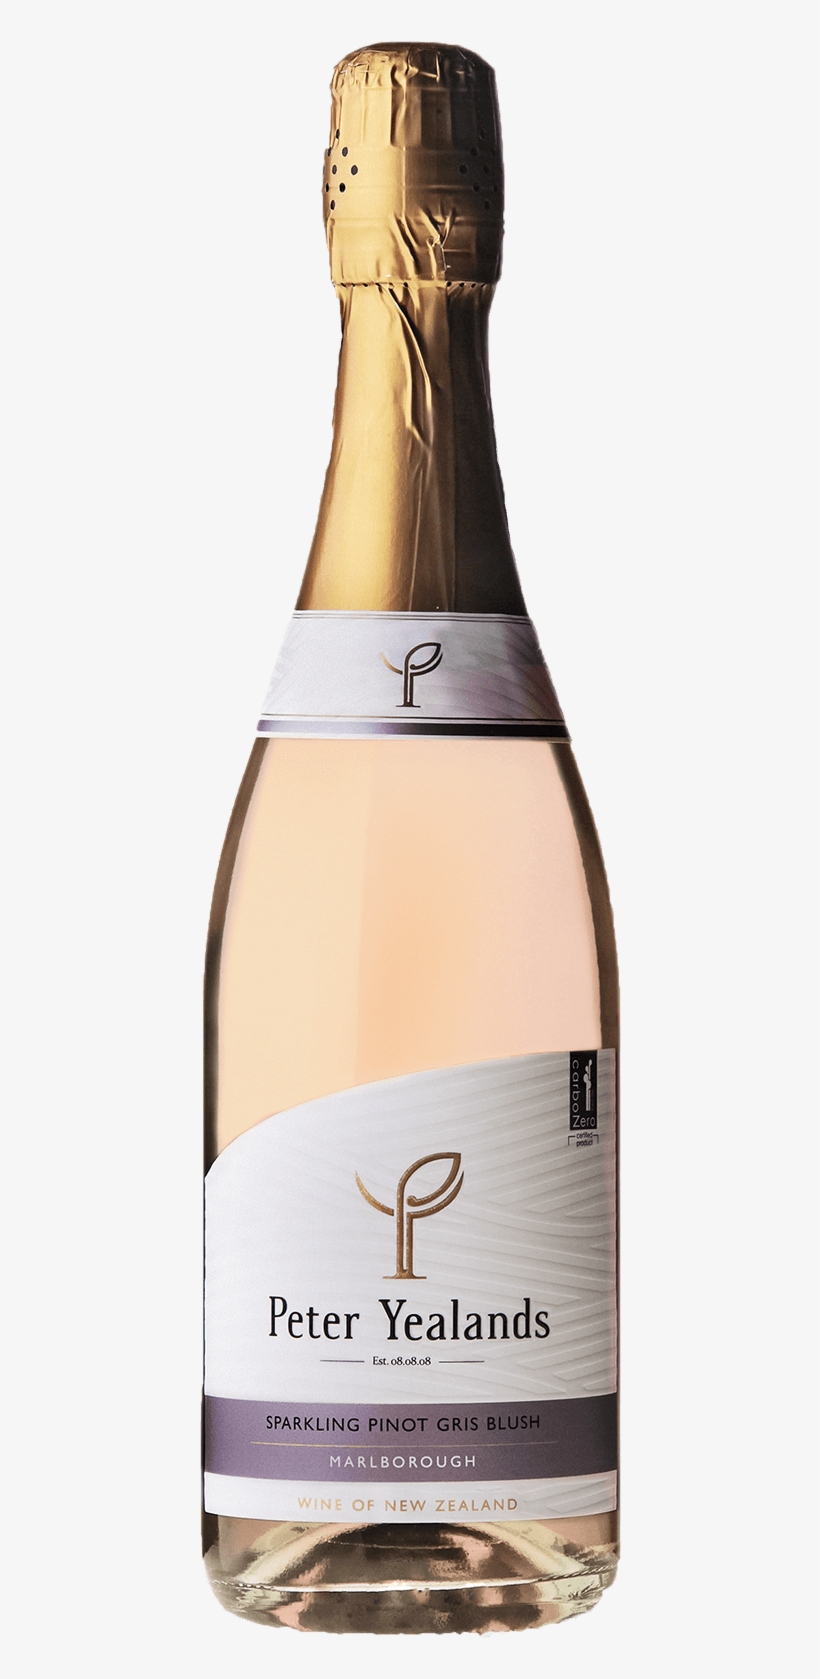 Peter Yealands Sparkling Pinot Gris Blush, transparent png #2837010